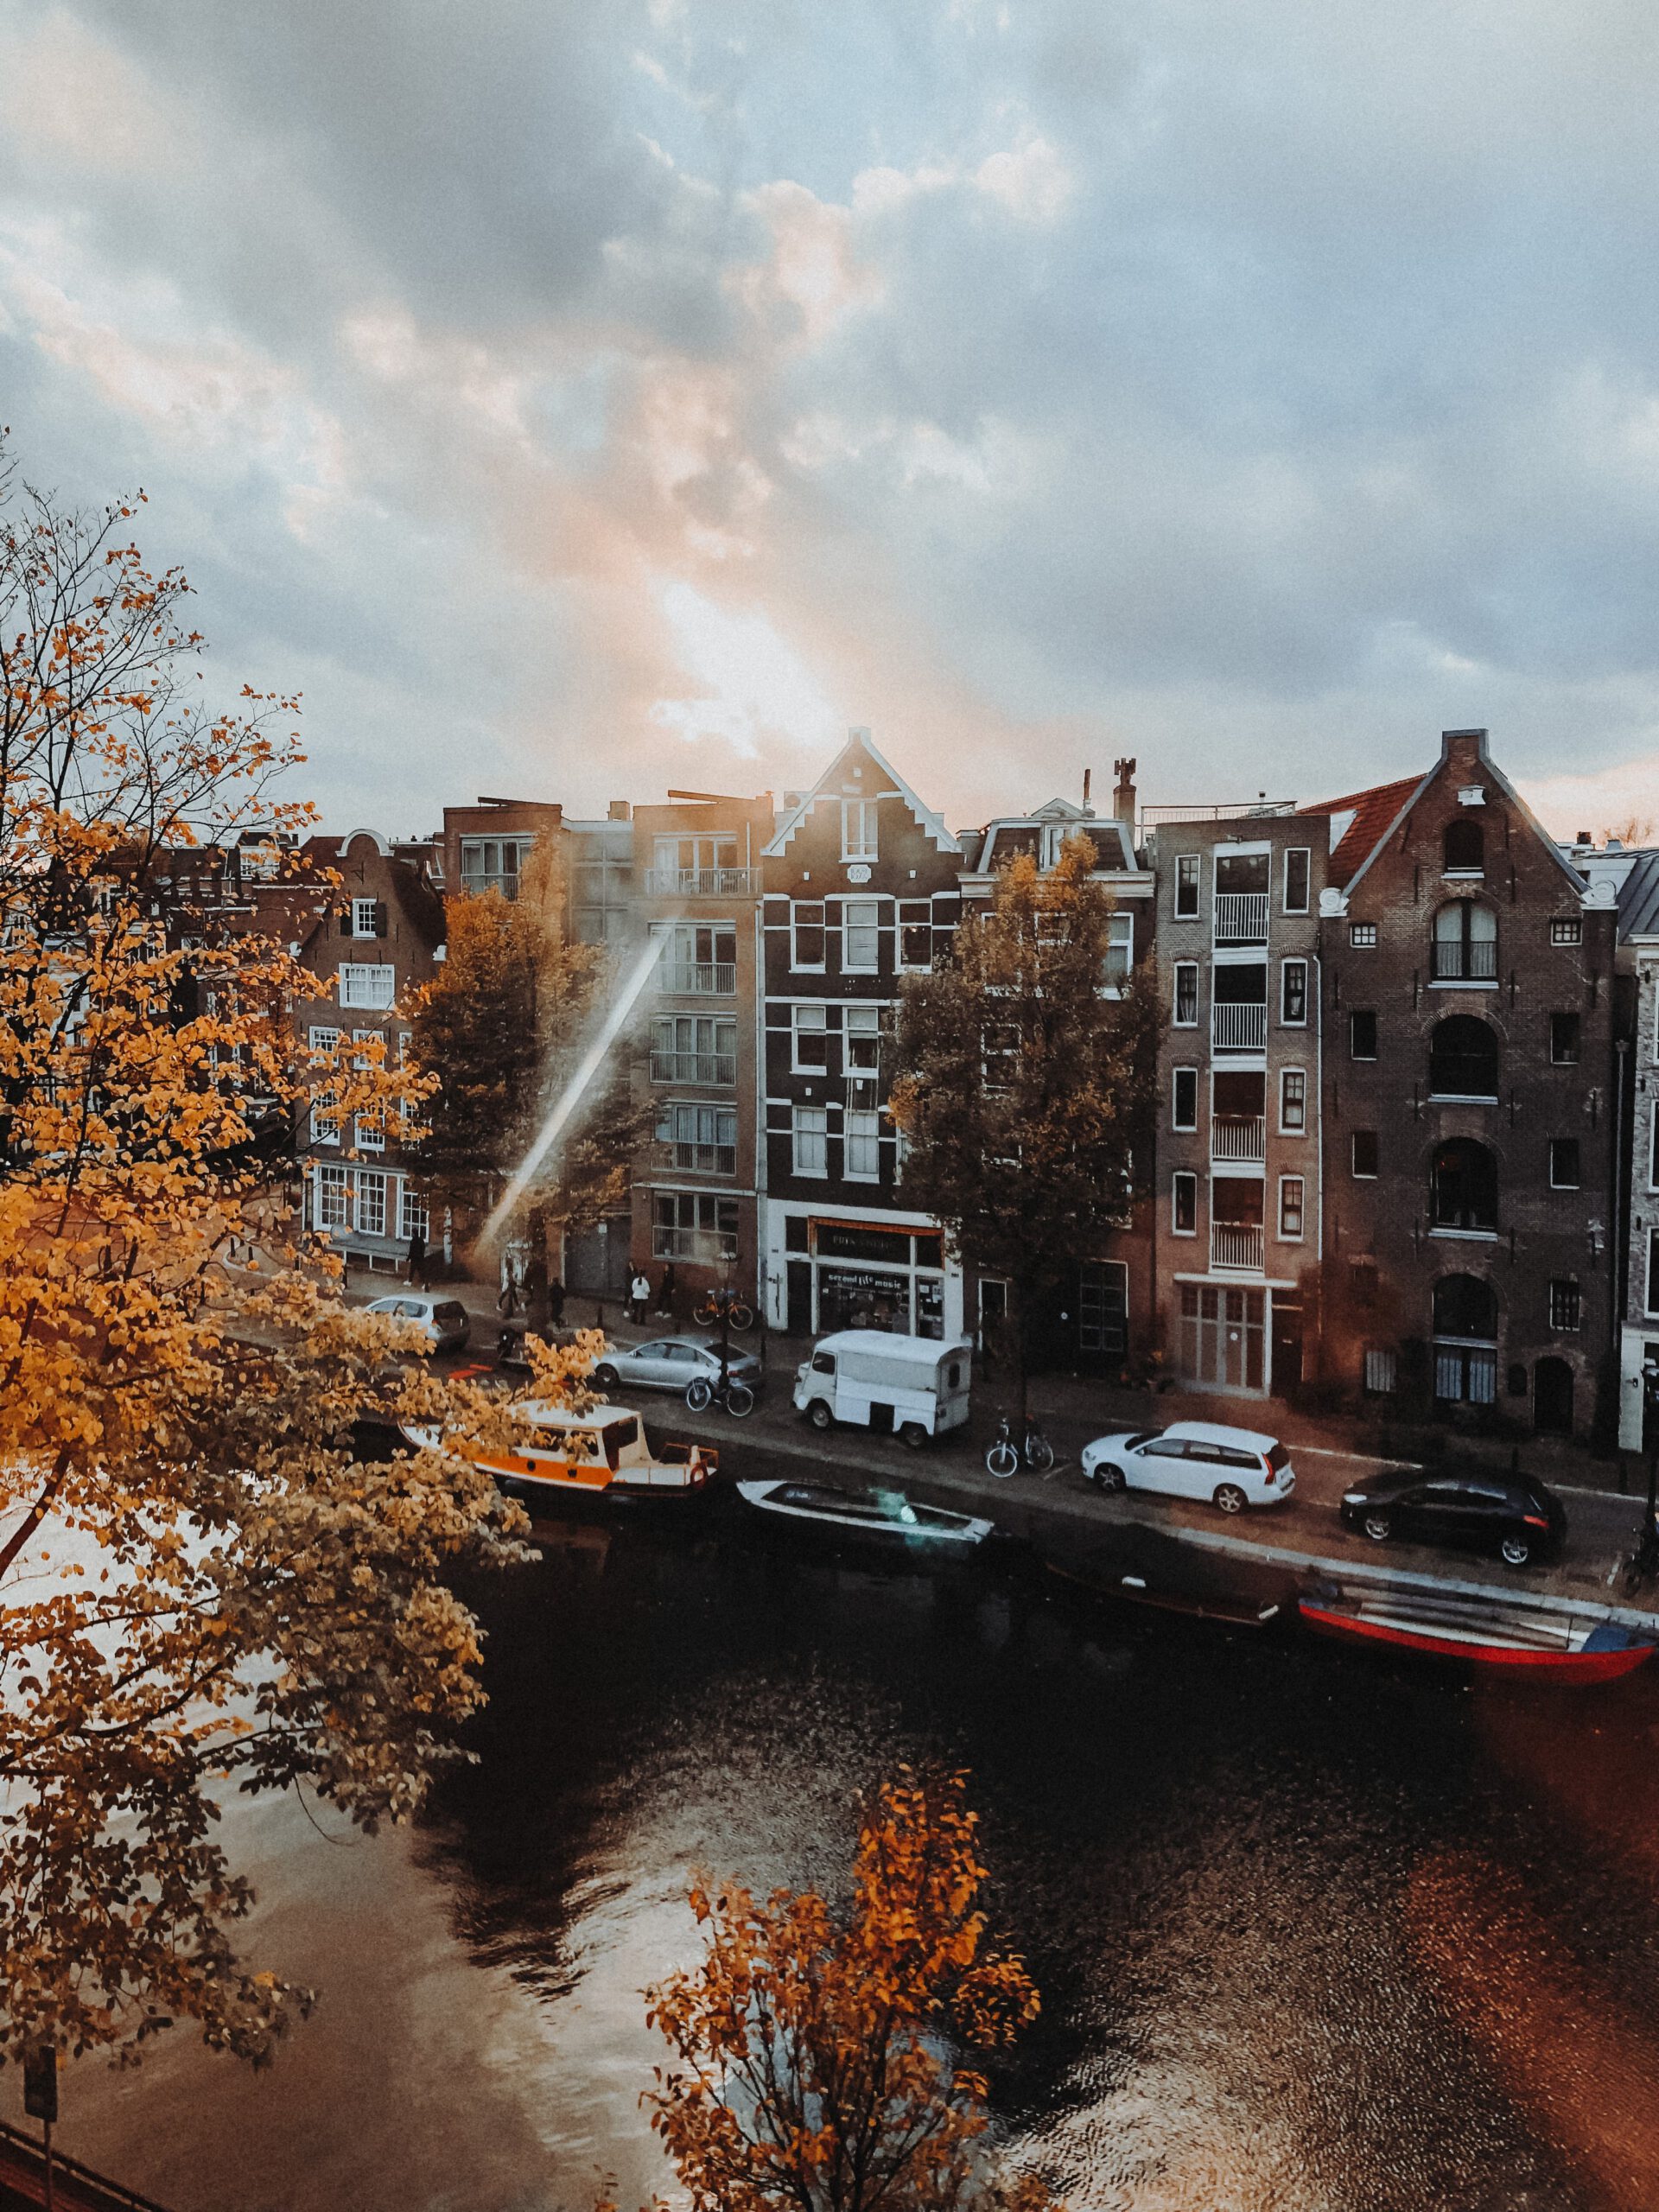 amsterdam canals - grachten amsterdam - centrum amsterdam